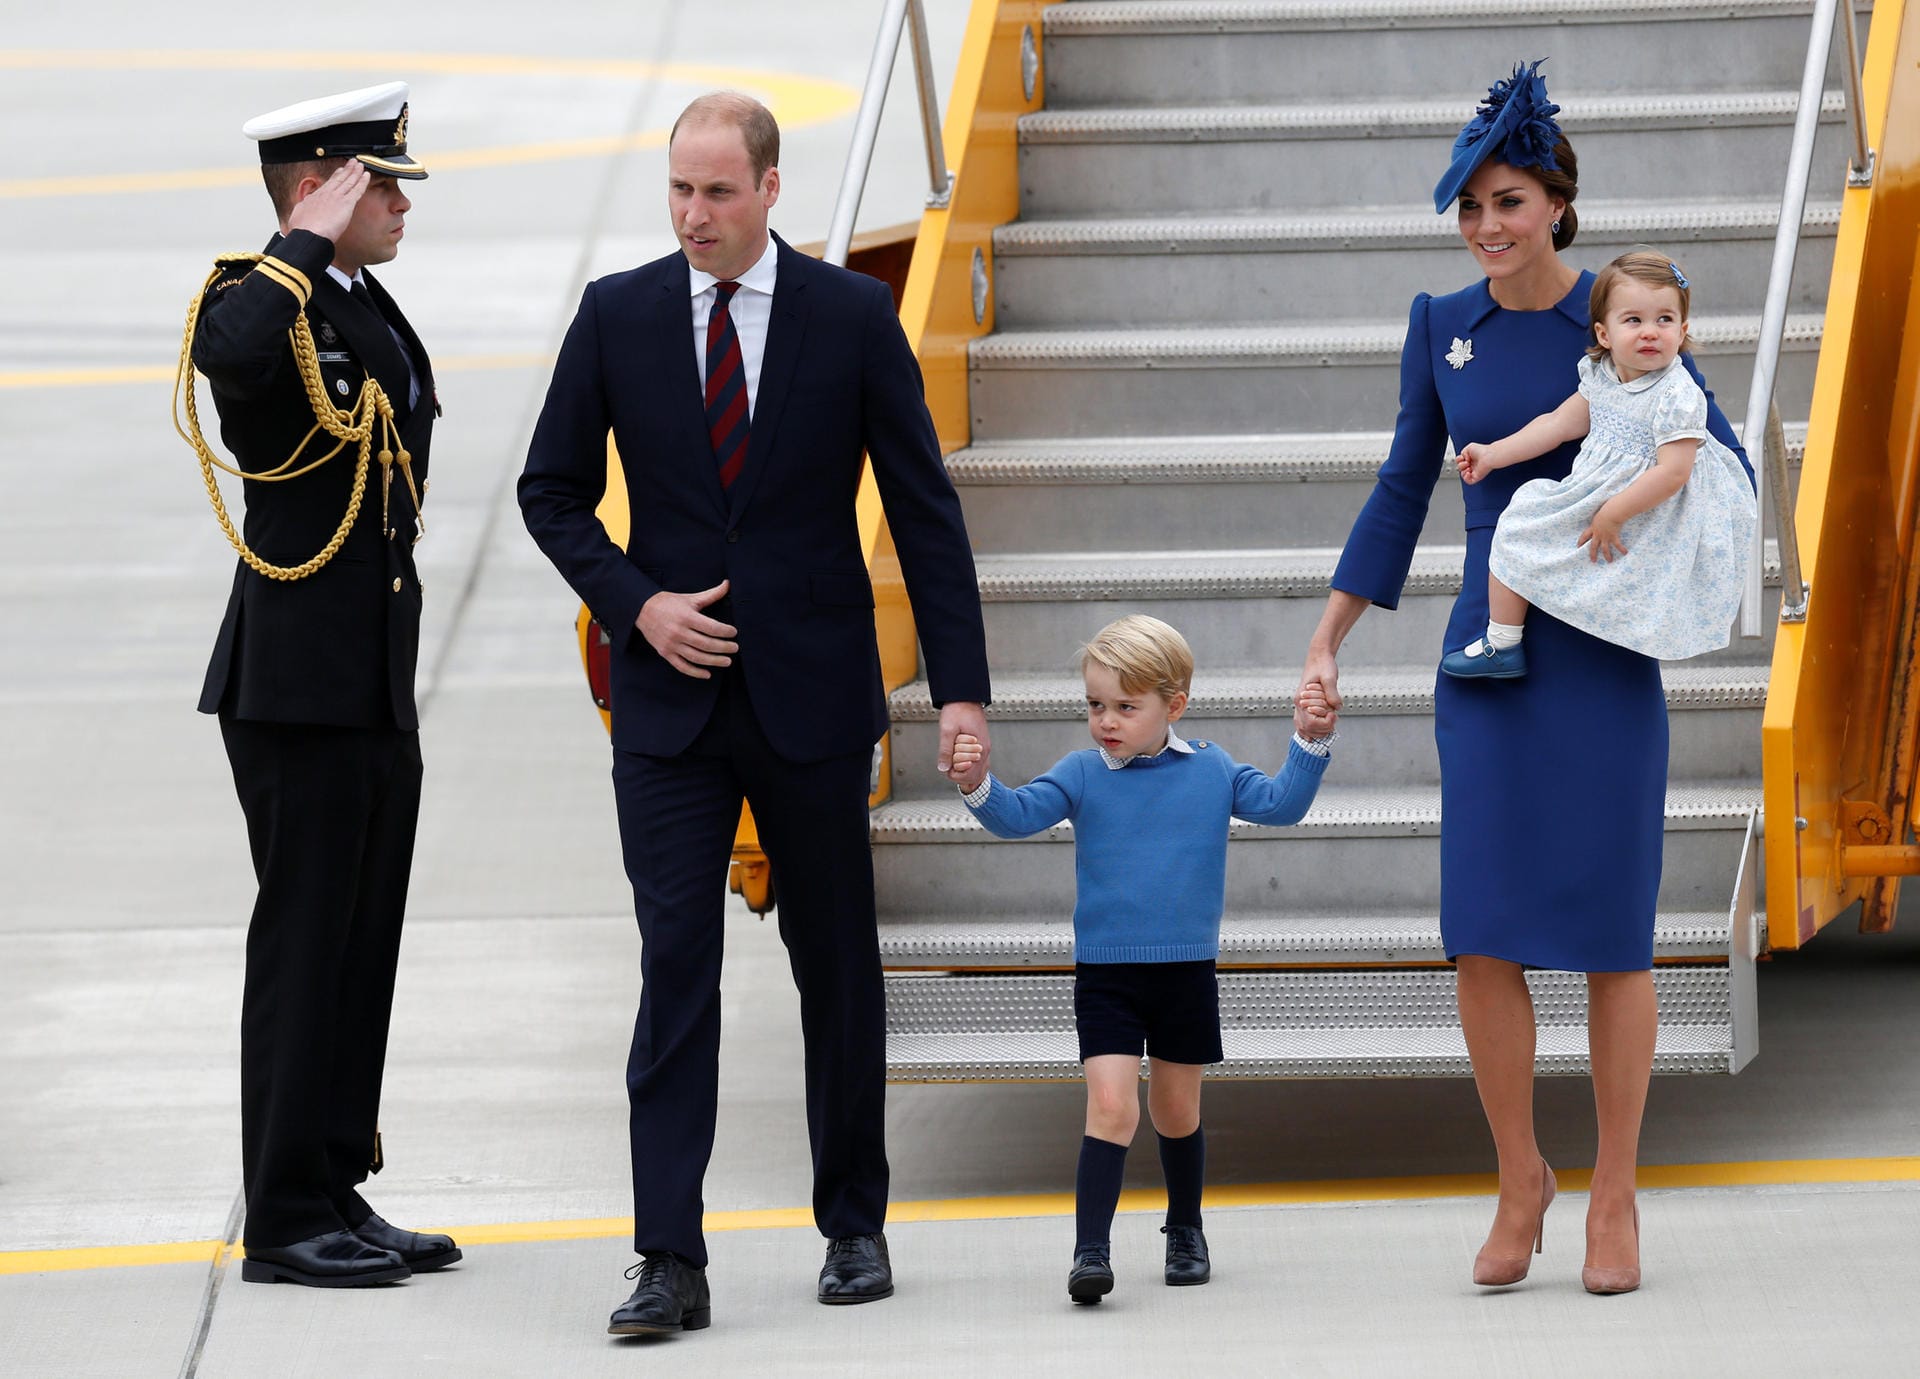 Am 24. September 2016 landen Prinz William, Herzogin Kate und die Kinder George und Charlotte auf dem Flughafen von Victoria. Die Königsfamilie bleibt für acht Tage in Kanada.